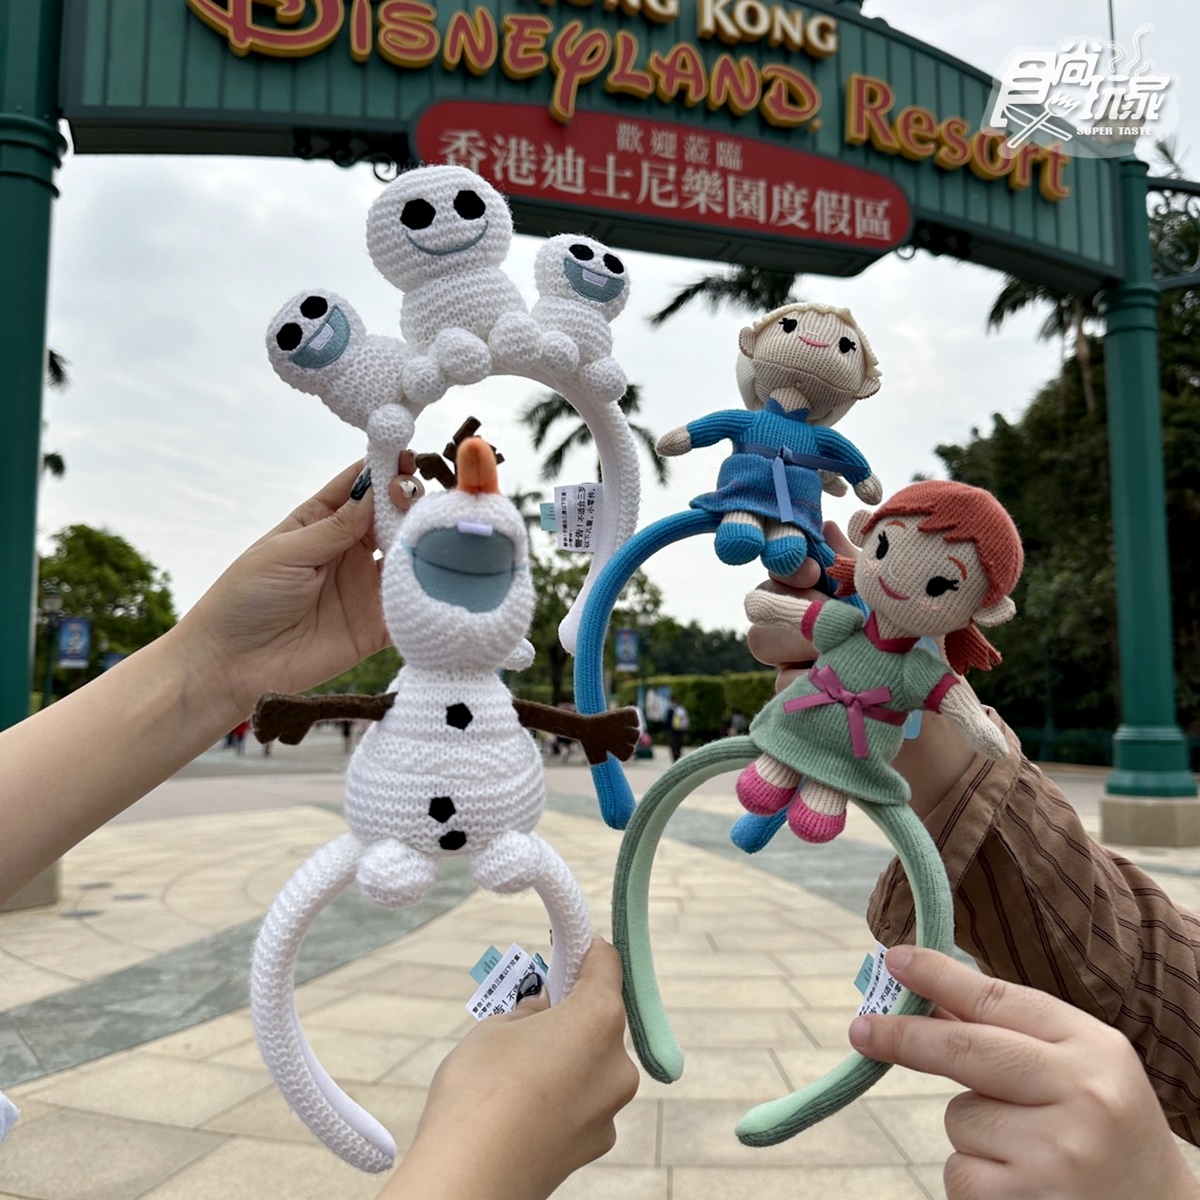 雪寶糖果桶、小雪人頭箍Q爆！香港迪士尼樂園「魔雪奇緣世界」10大周邊推推